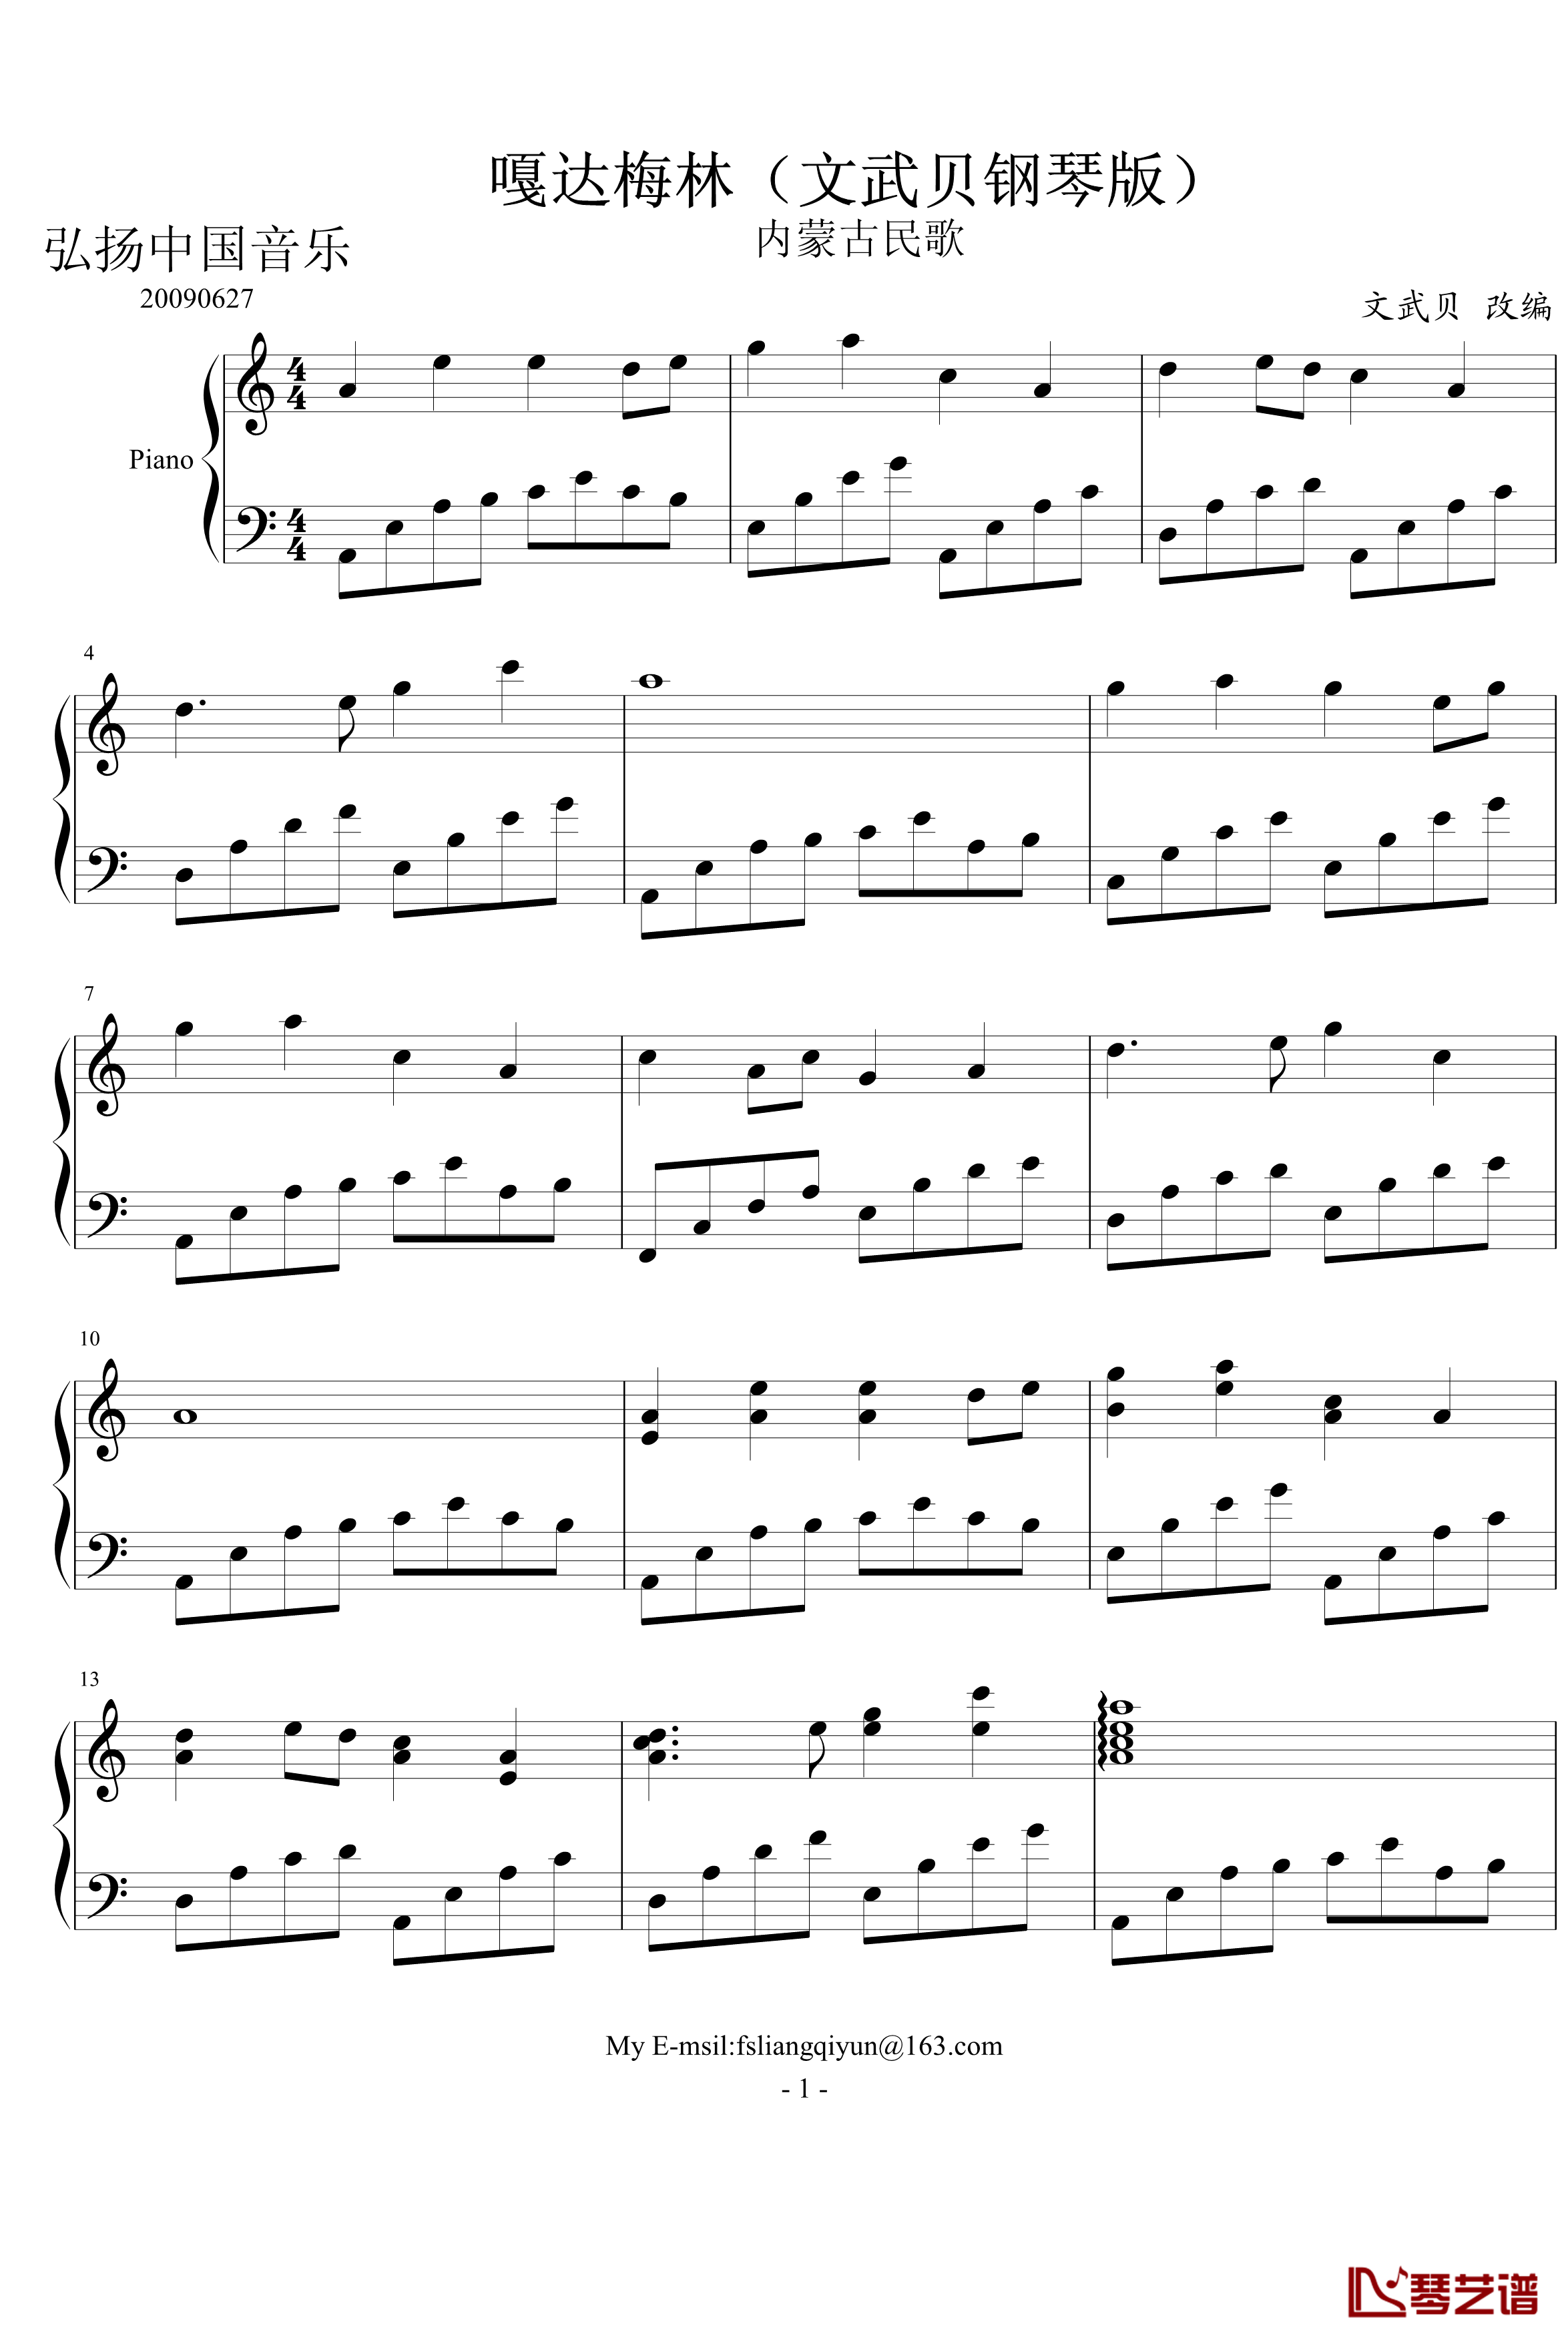 嘎达梅林钢琴谱-文武贝钢琴版-中国名曲